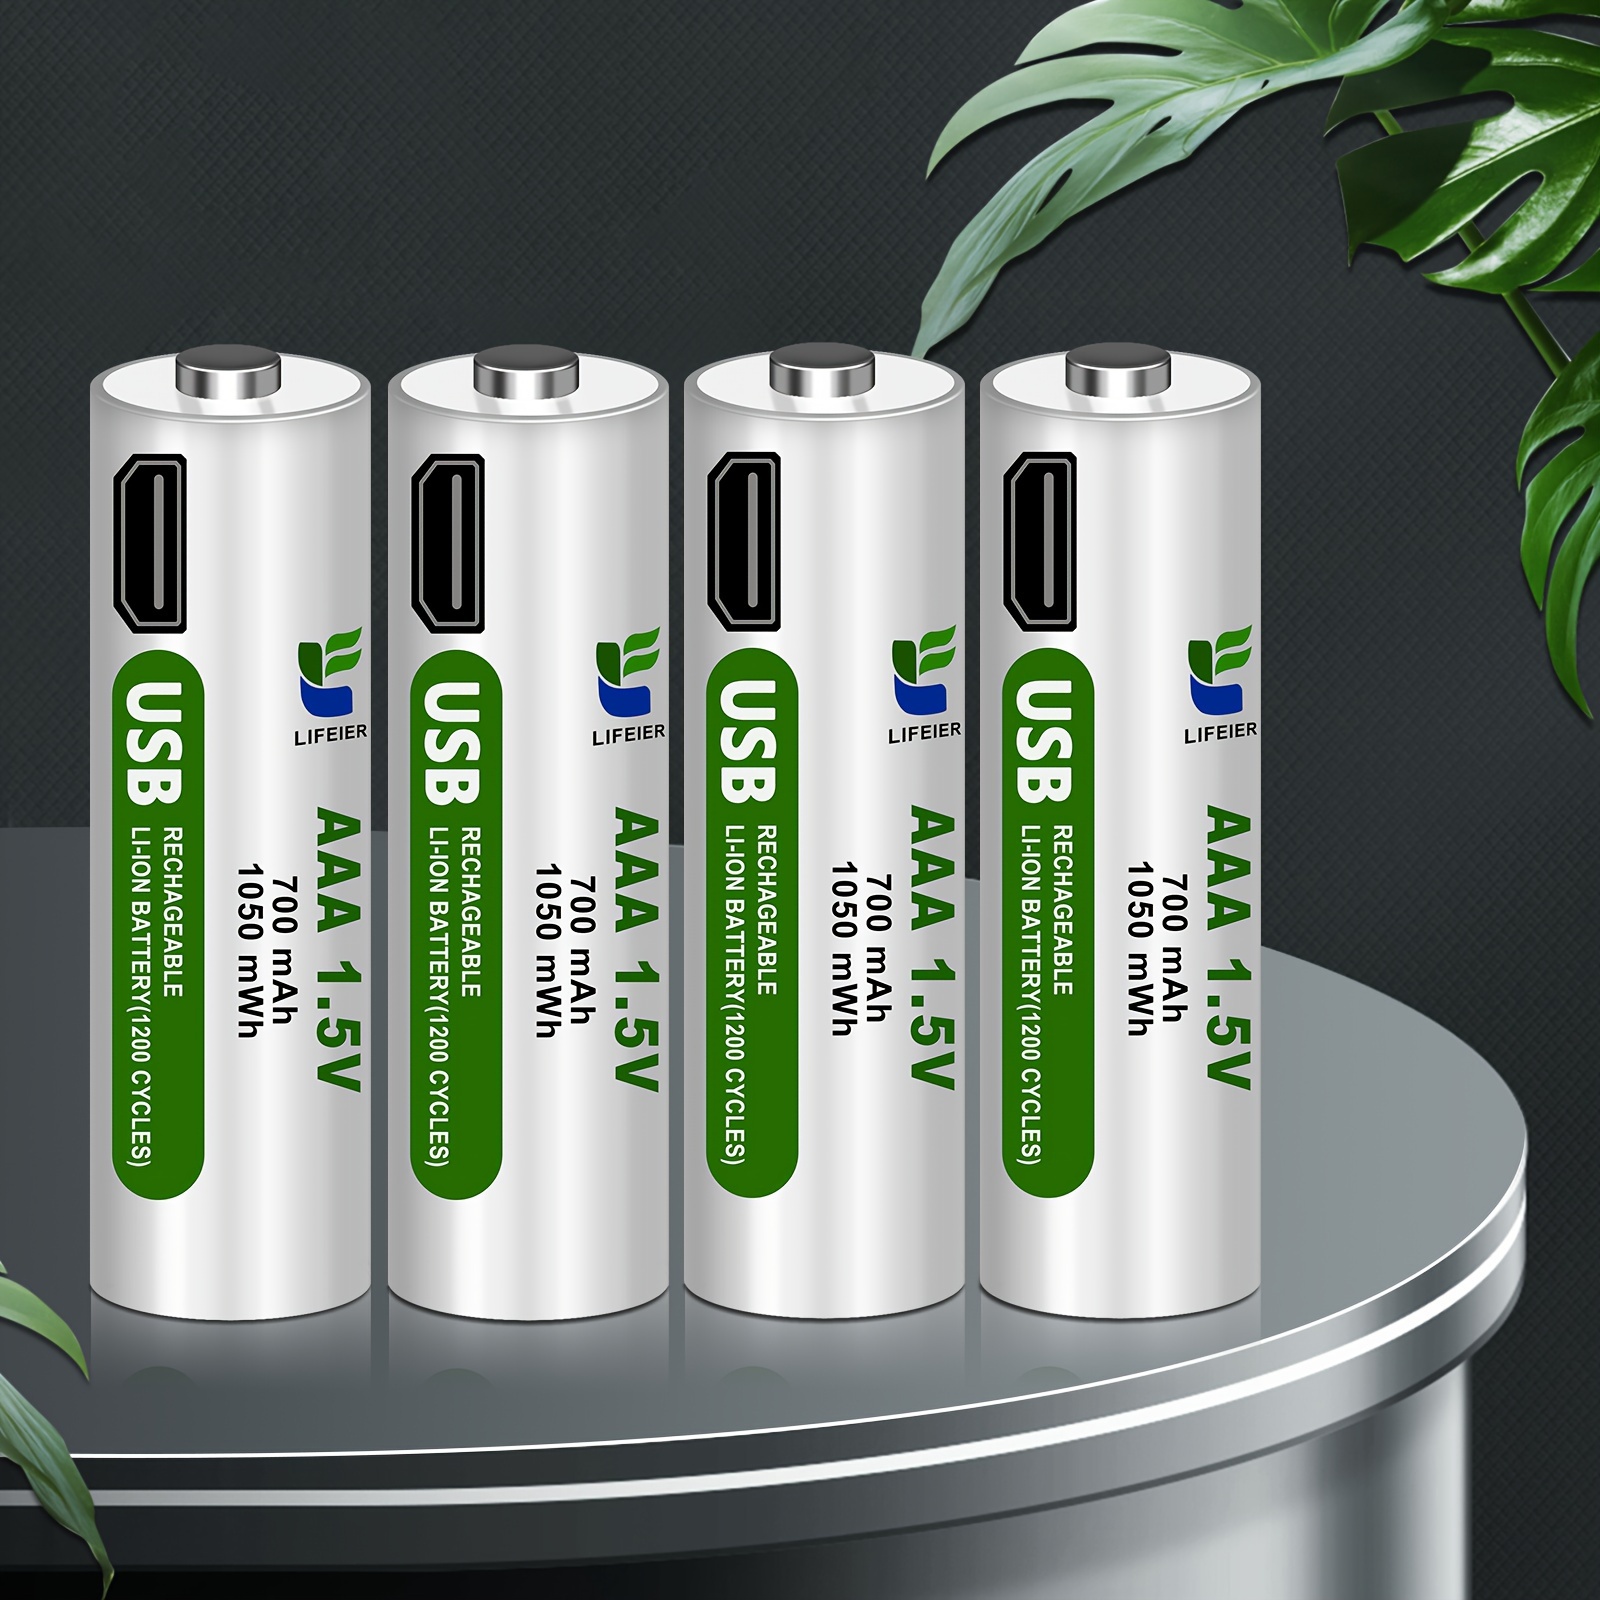 Pila de batería recargable AA alcalina de 1.5V (16PCS AA)